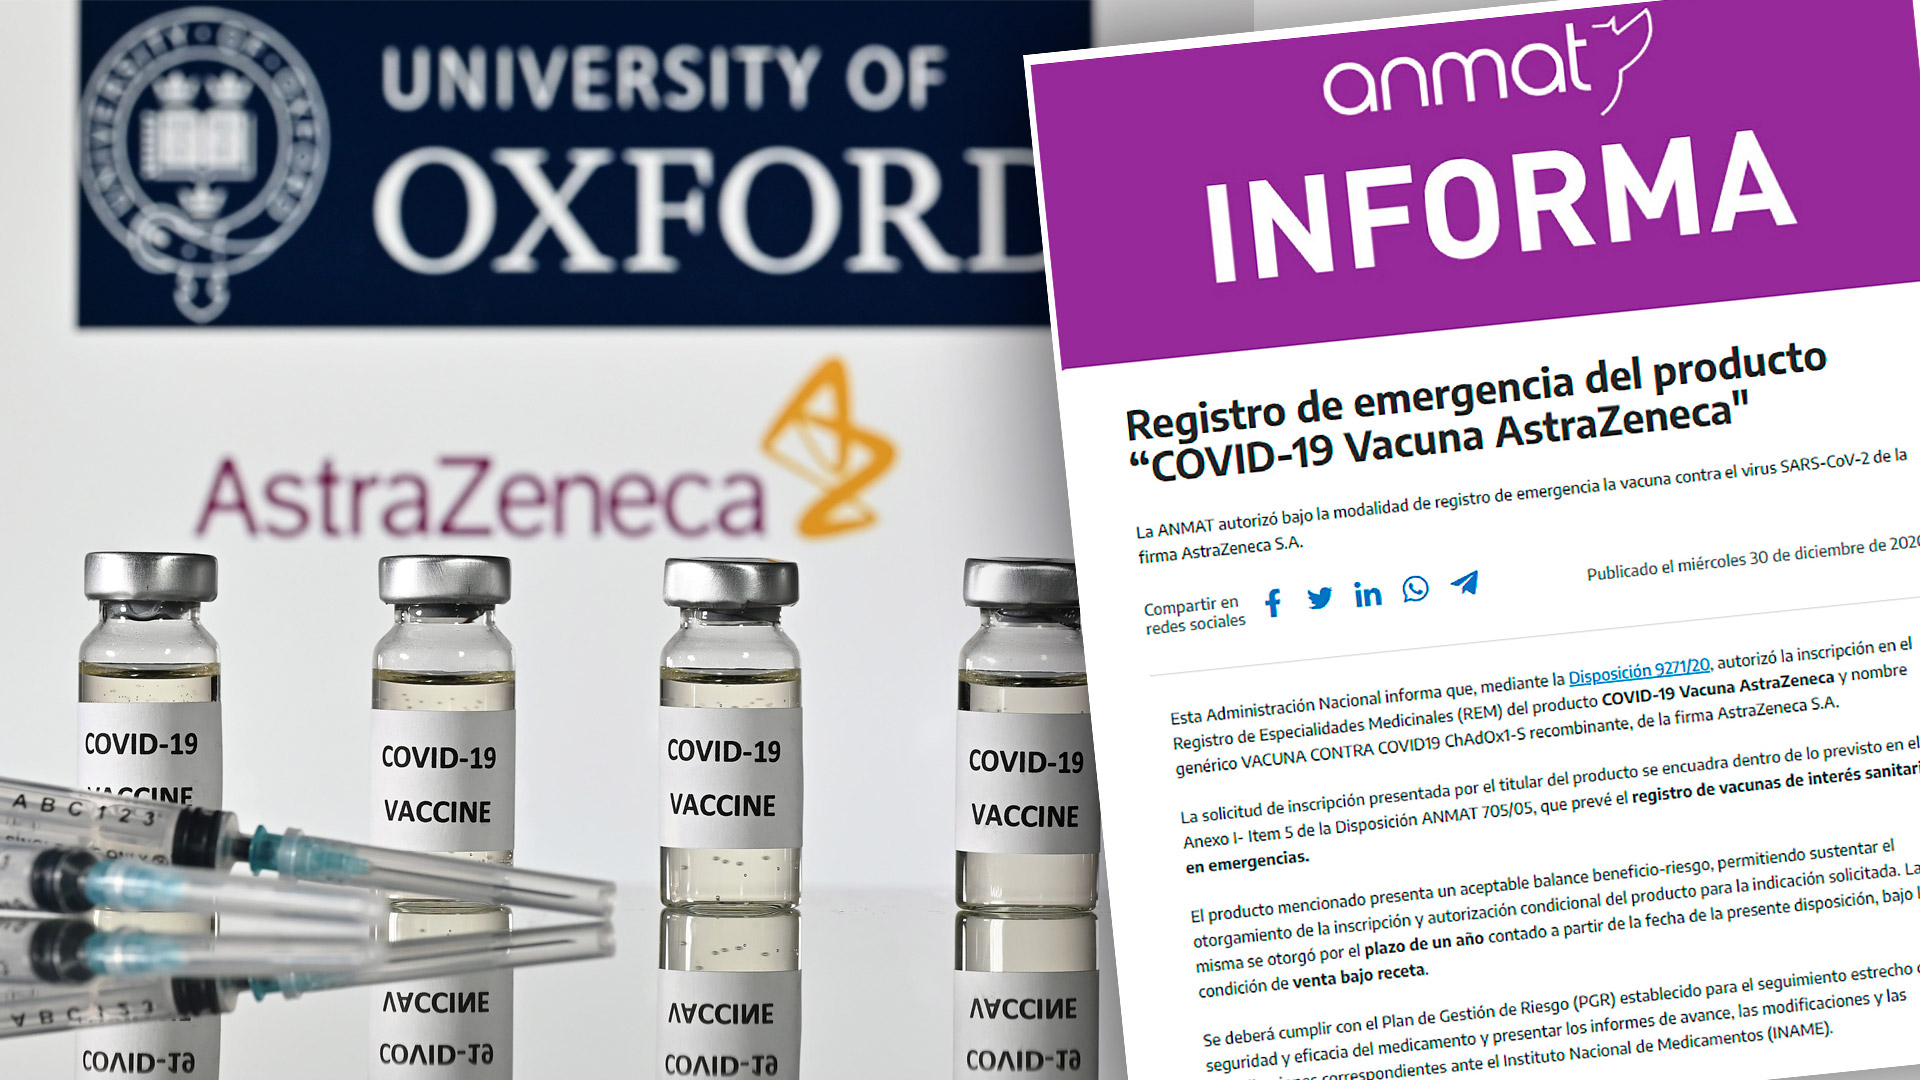 La ANMAT aprobó el uso de emergencia de la vacuna de Oxford Aztrazeneca para su aplicación en la Argentina